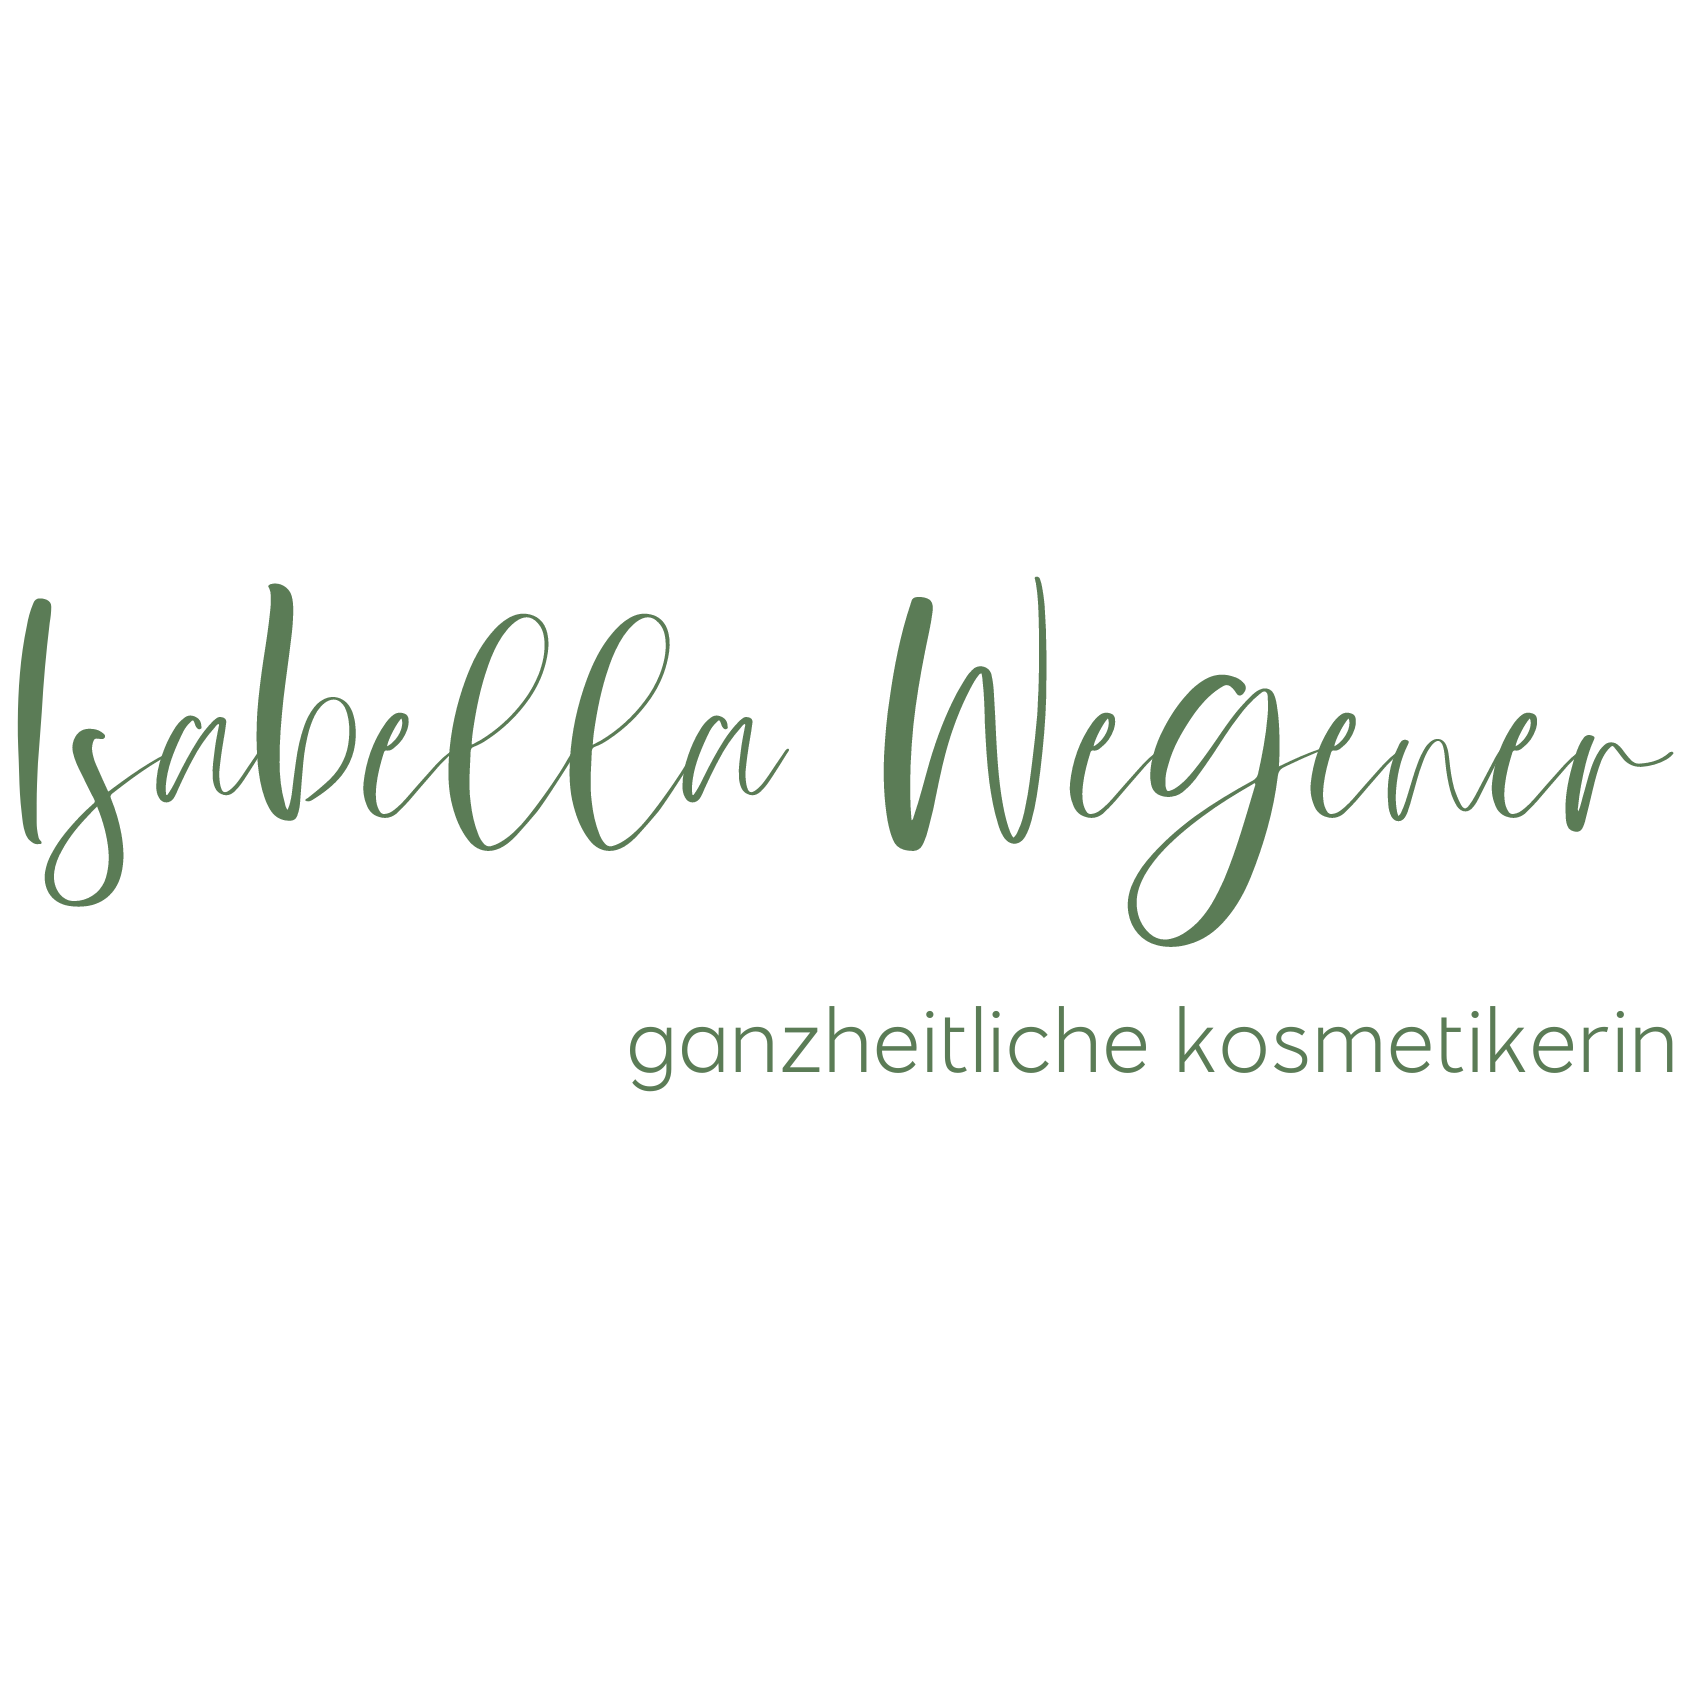 Ganzheitliche Kosmetikerin Isabella Wegener, Haut-Energetikerin, Haut- und Seelenpflege in Obermeitingen in Bayern zwischen Augsburg, München und Landsberg am Lech.